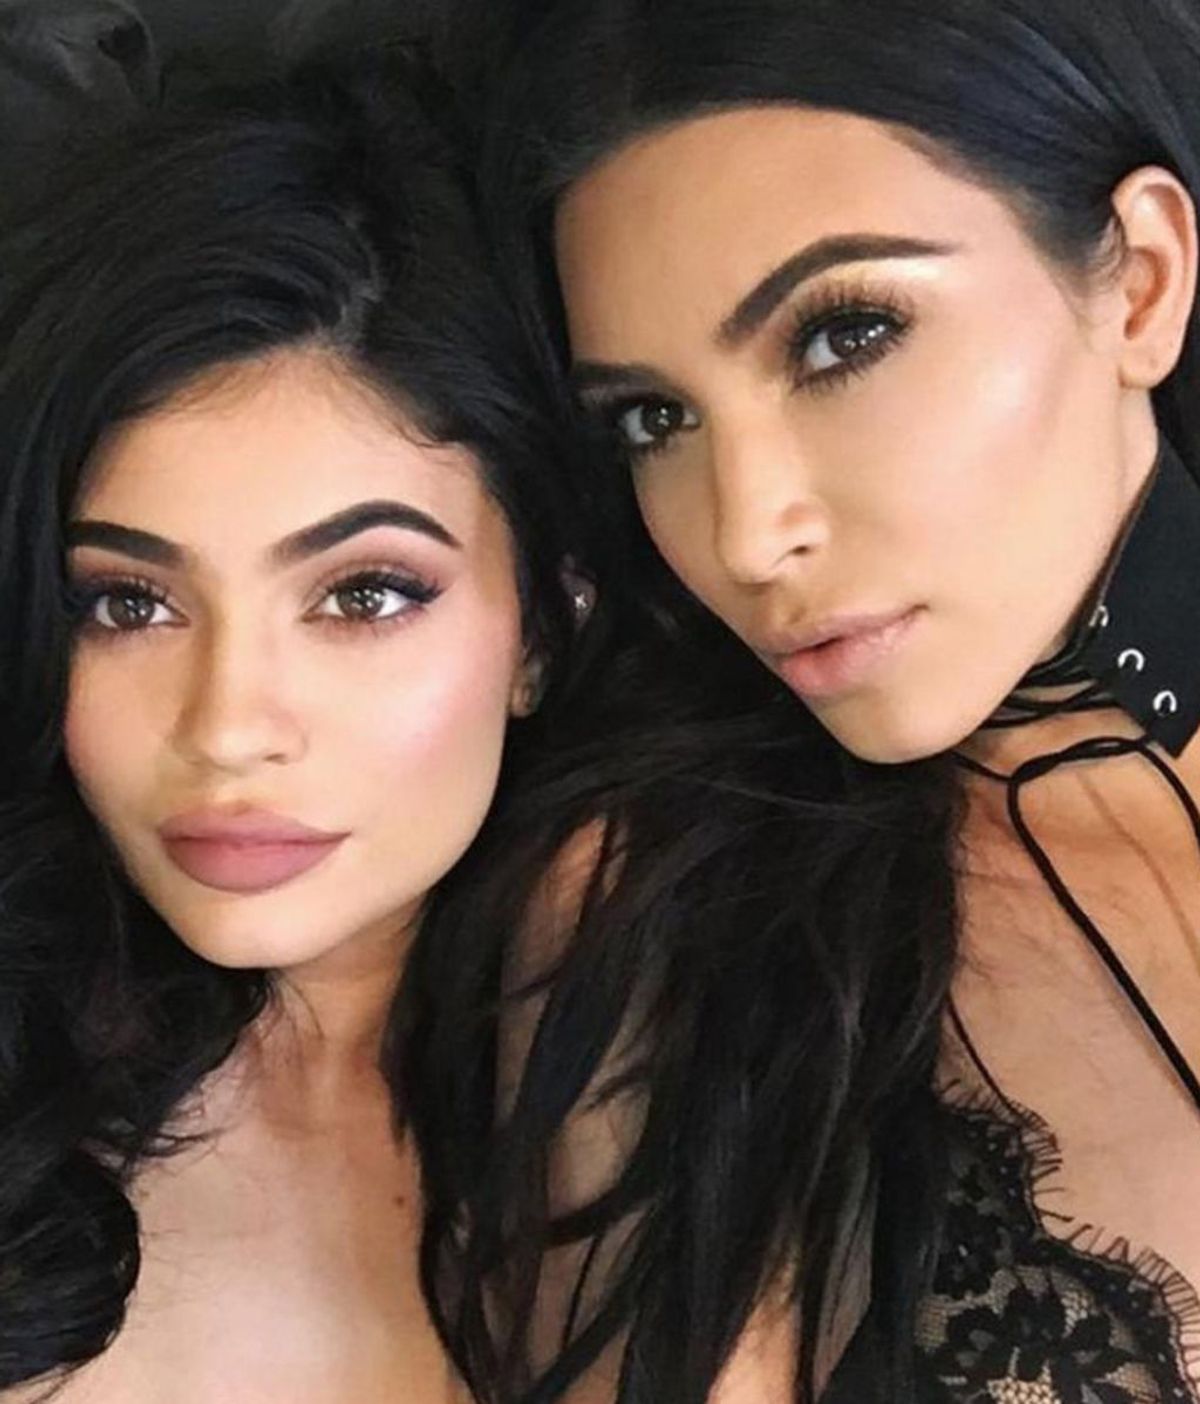 El increíble parecido de dos hermanas con Kim Kardashian y Kylie Jenner